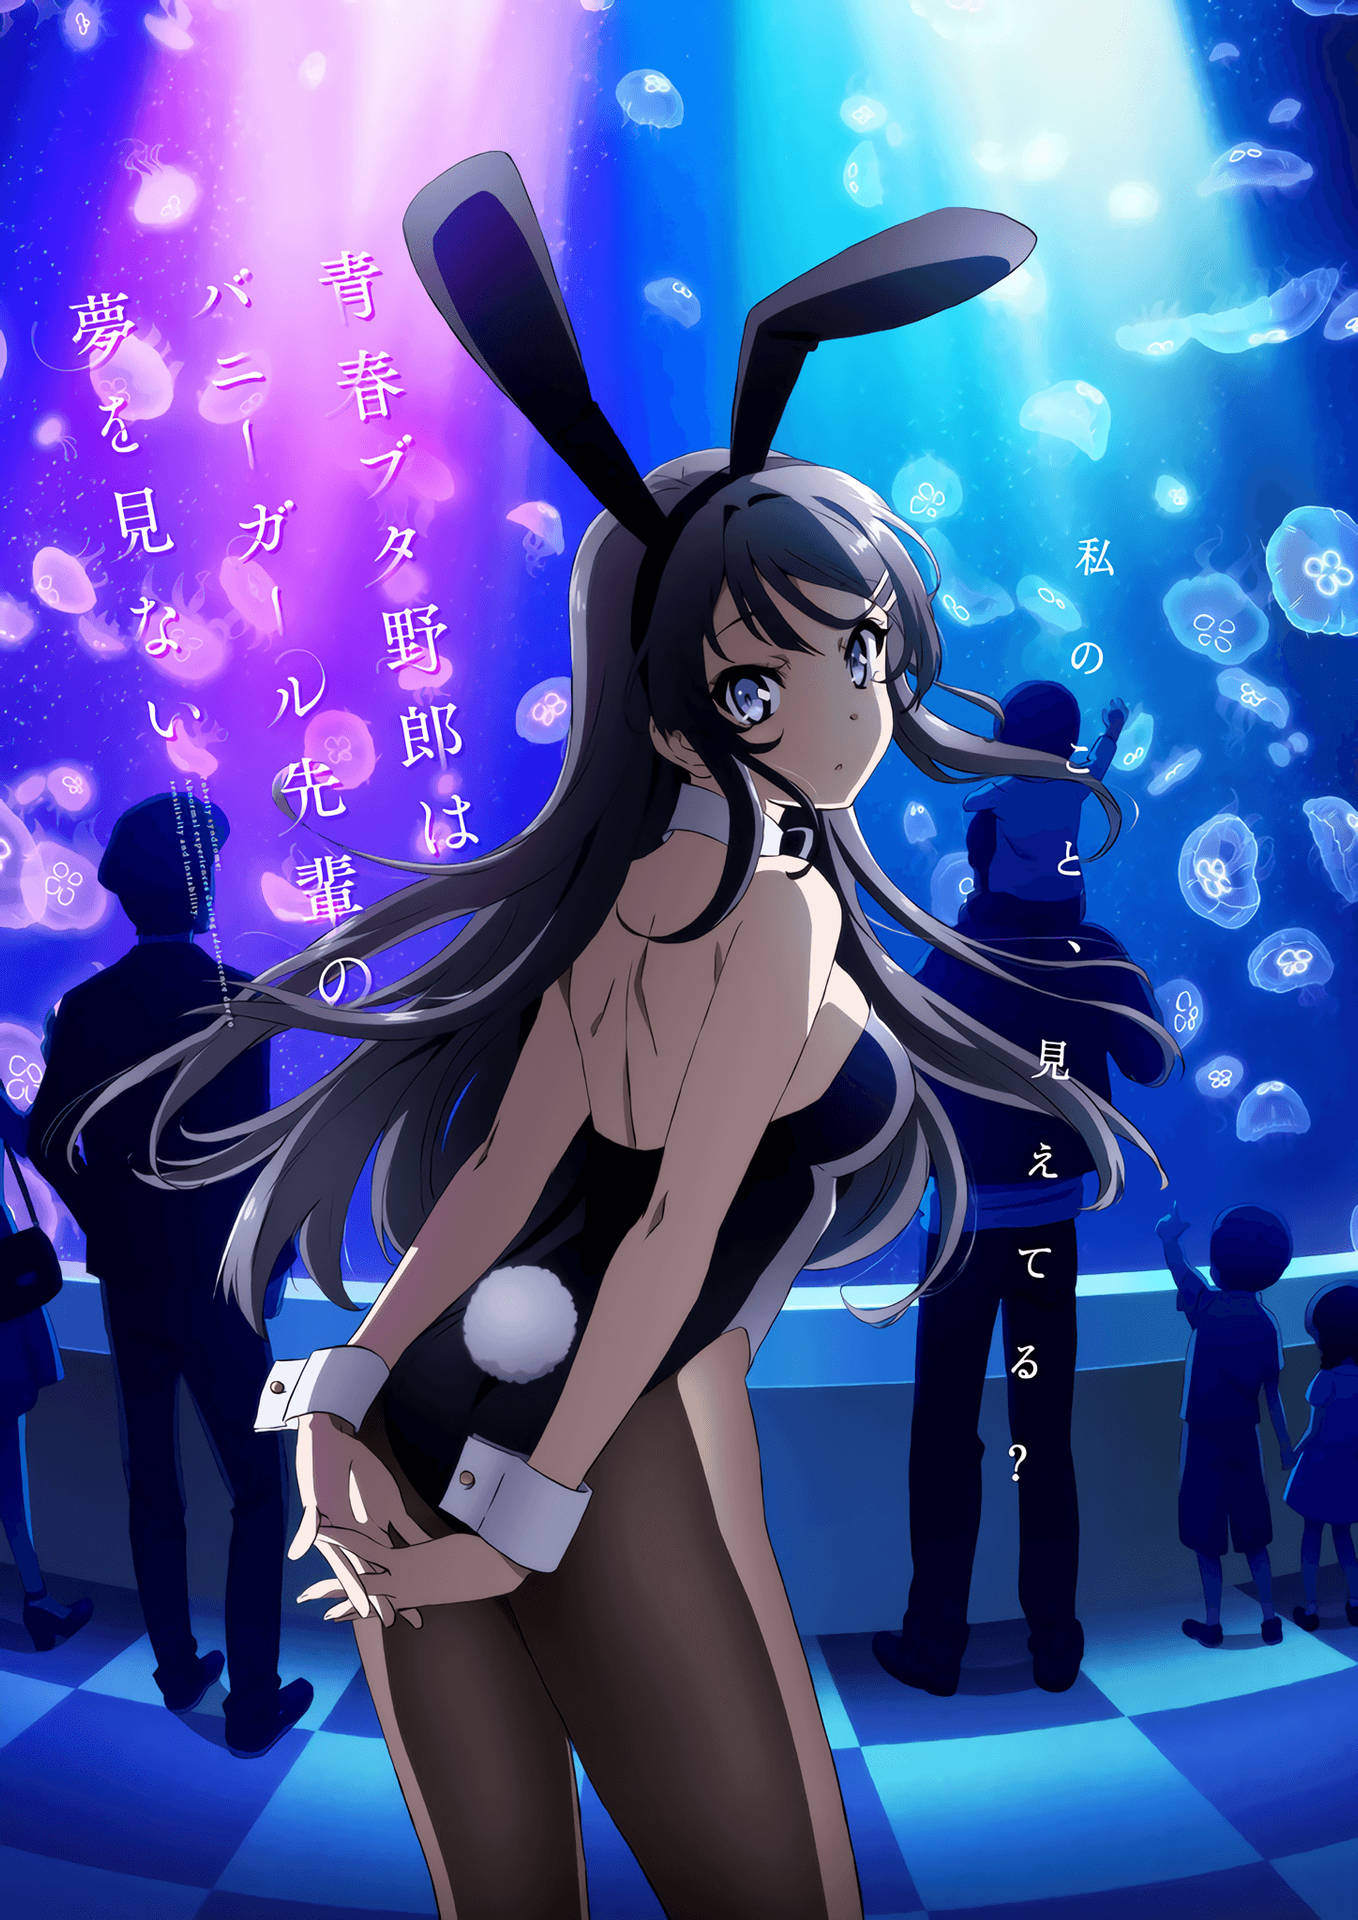 Et stillbillede af Mai Sakurajima fra Rascal Does Not Dream Of Bunny Girl Senpai. Wallpaper